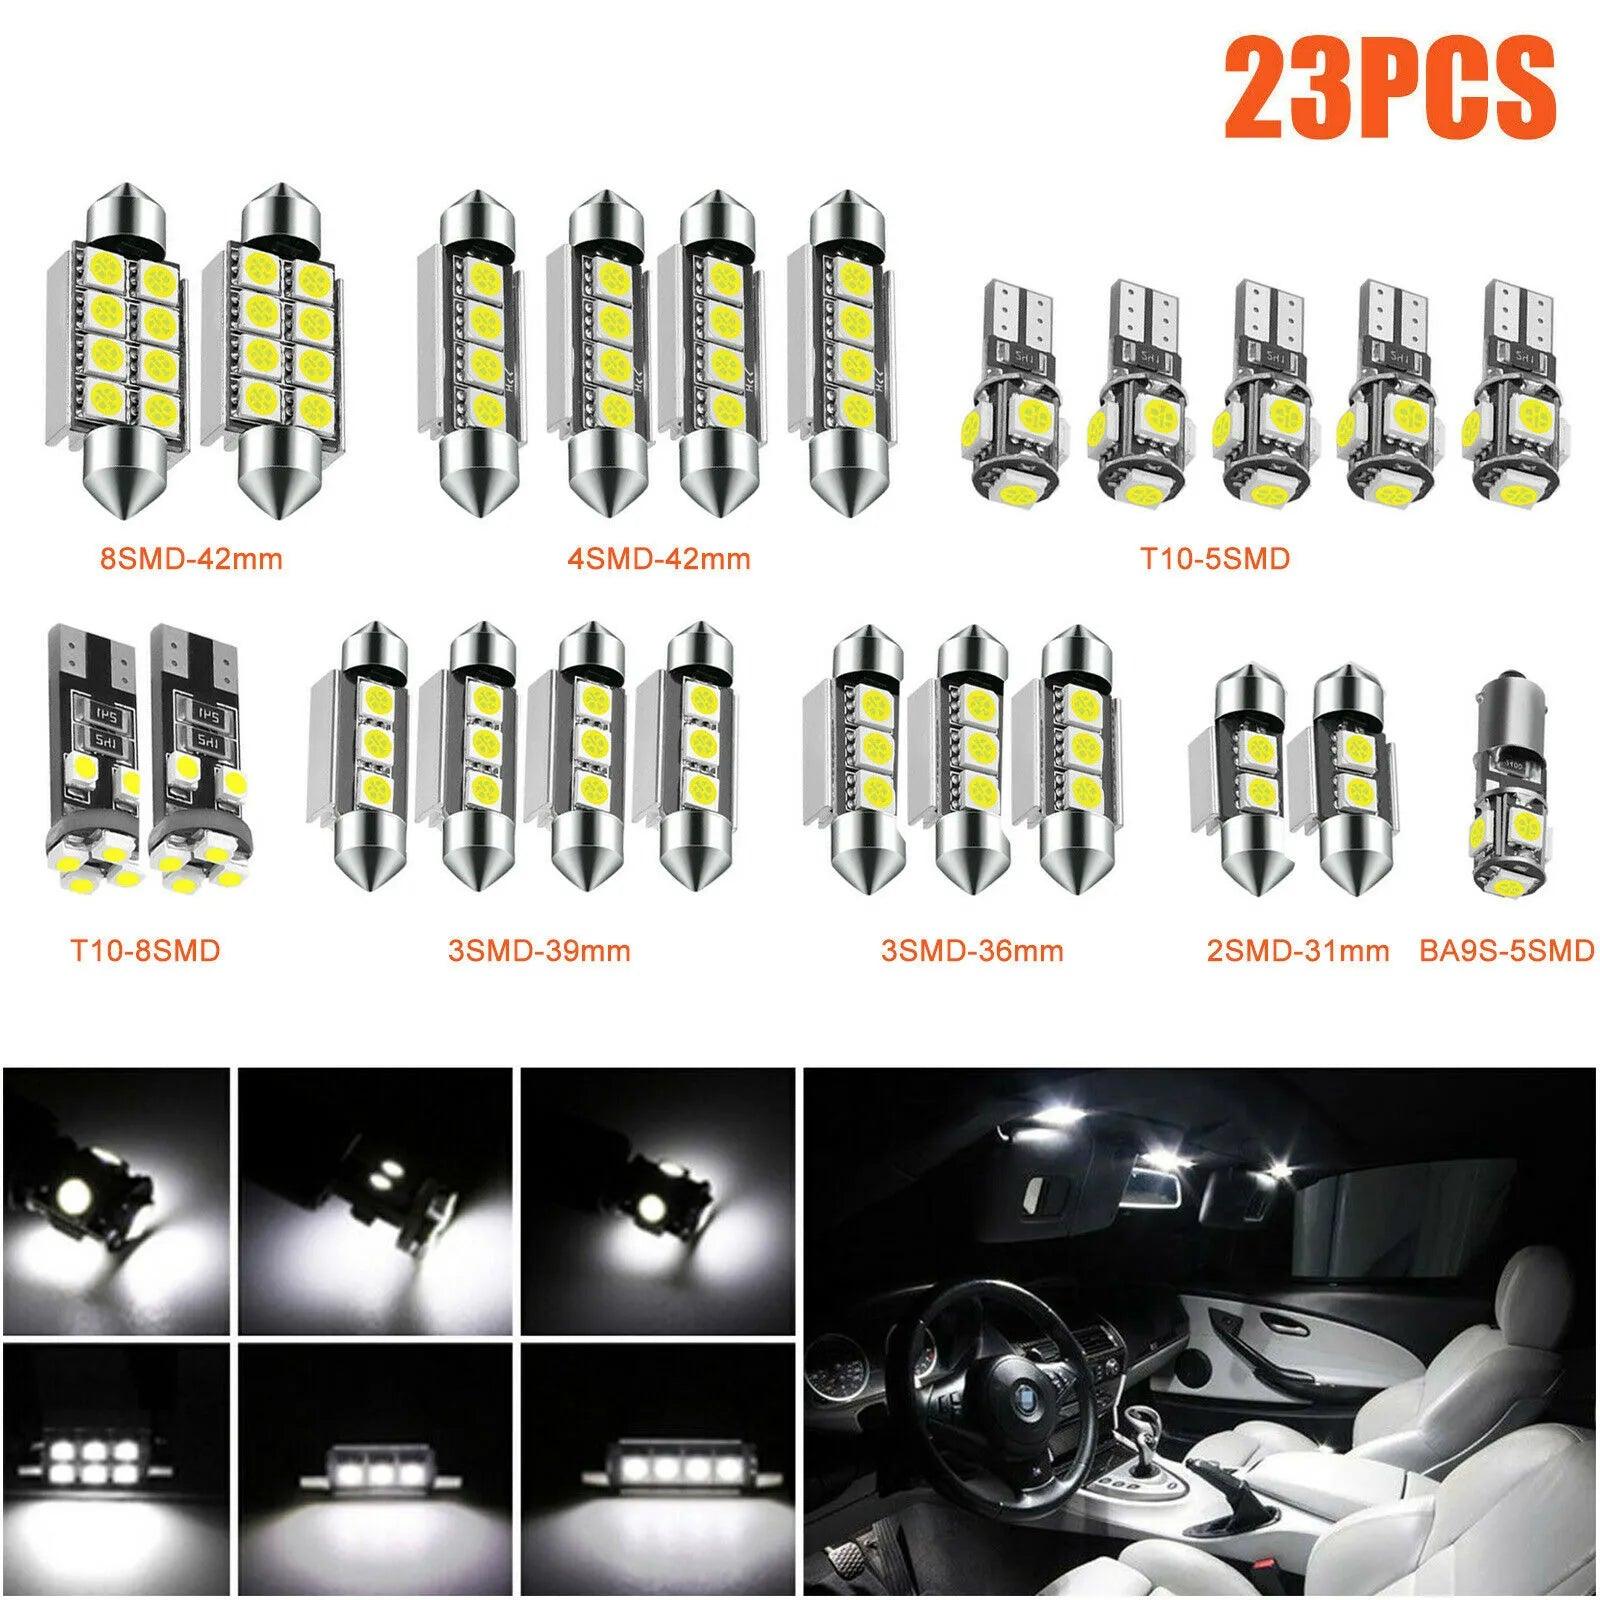 Enhance Your BMW Interior with 23-Piece LED Car Light Kit  ourlum.com   